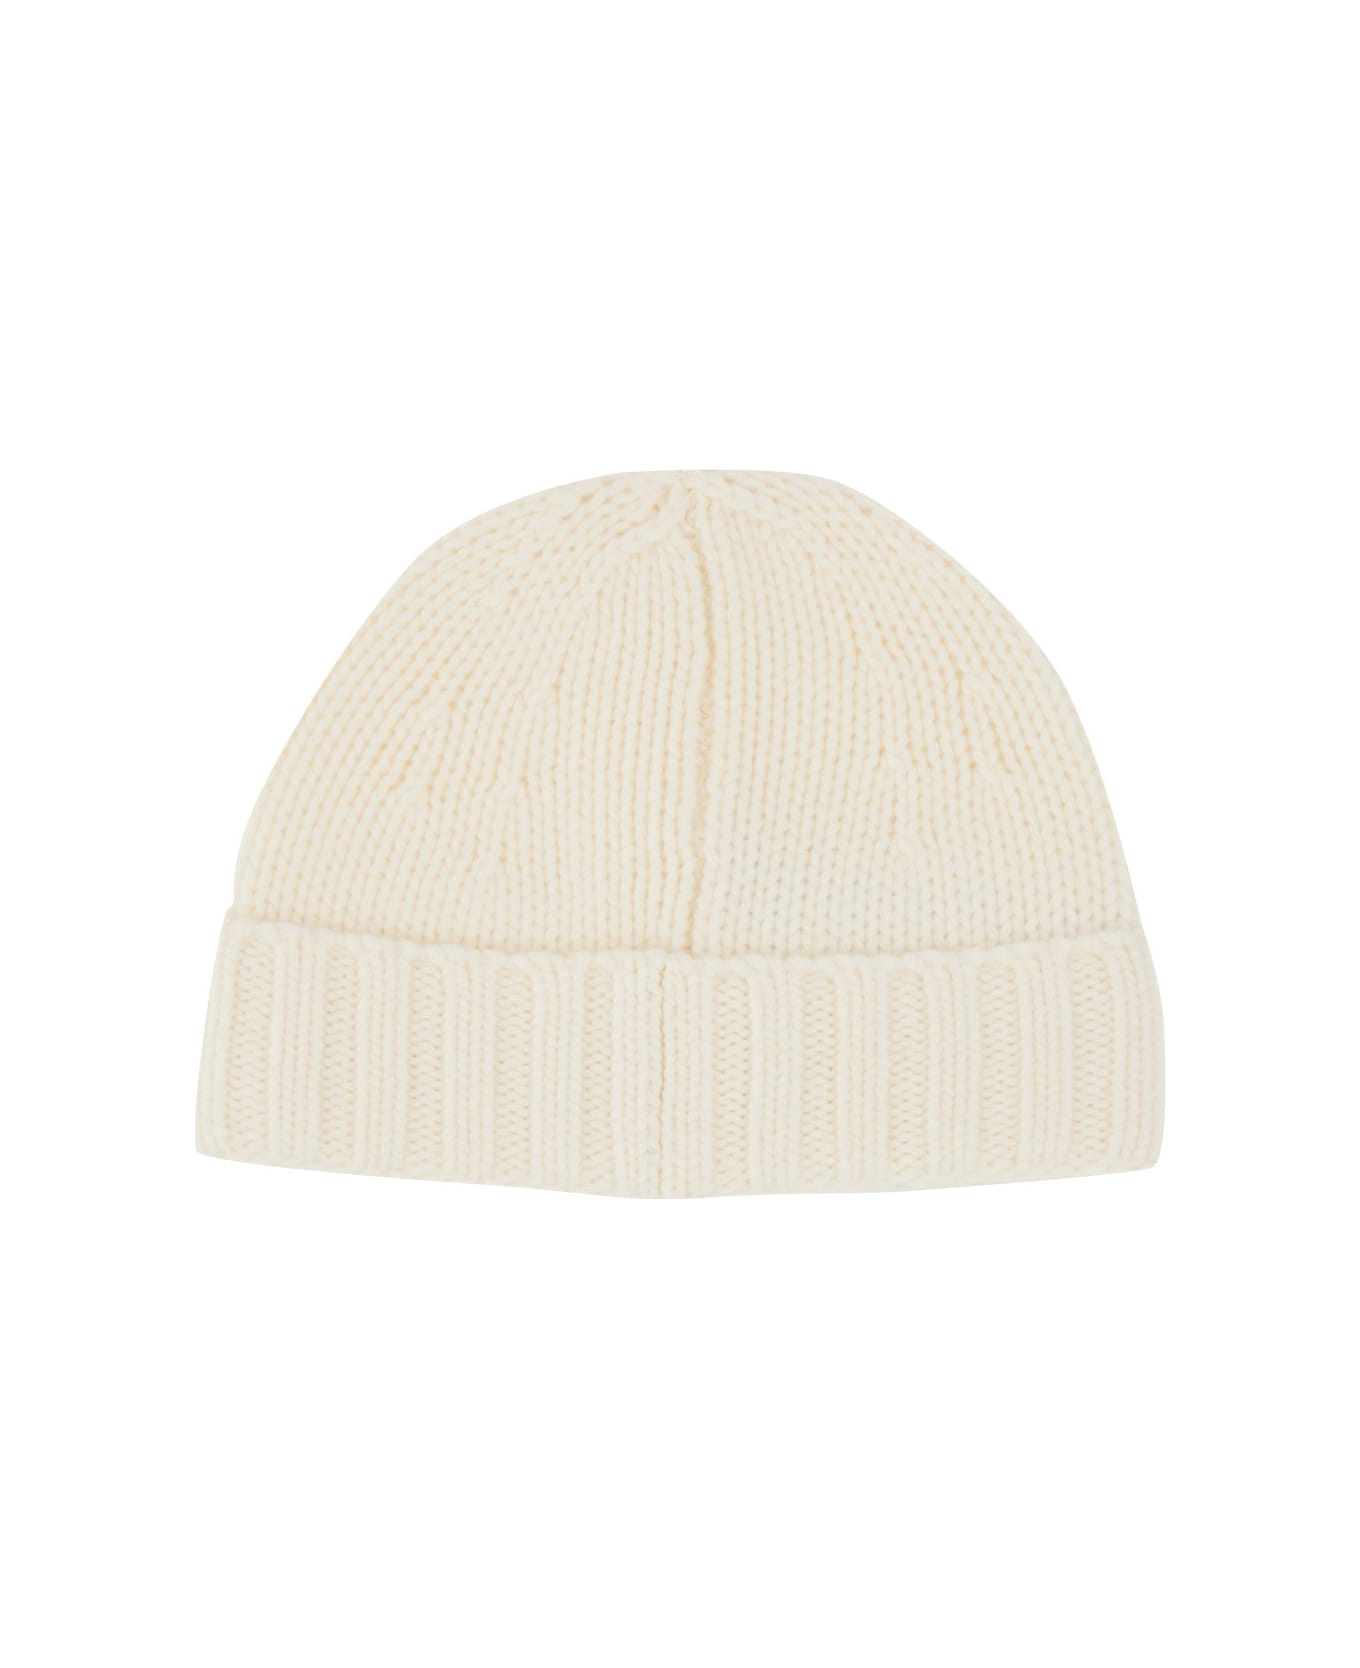 Stone Island Beanie Hat - BEIGE 帽子